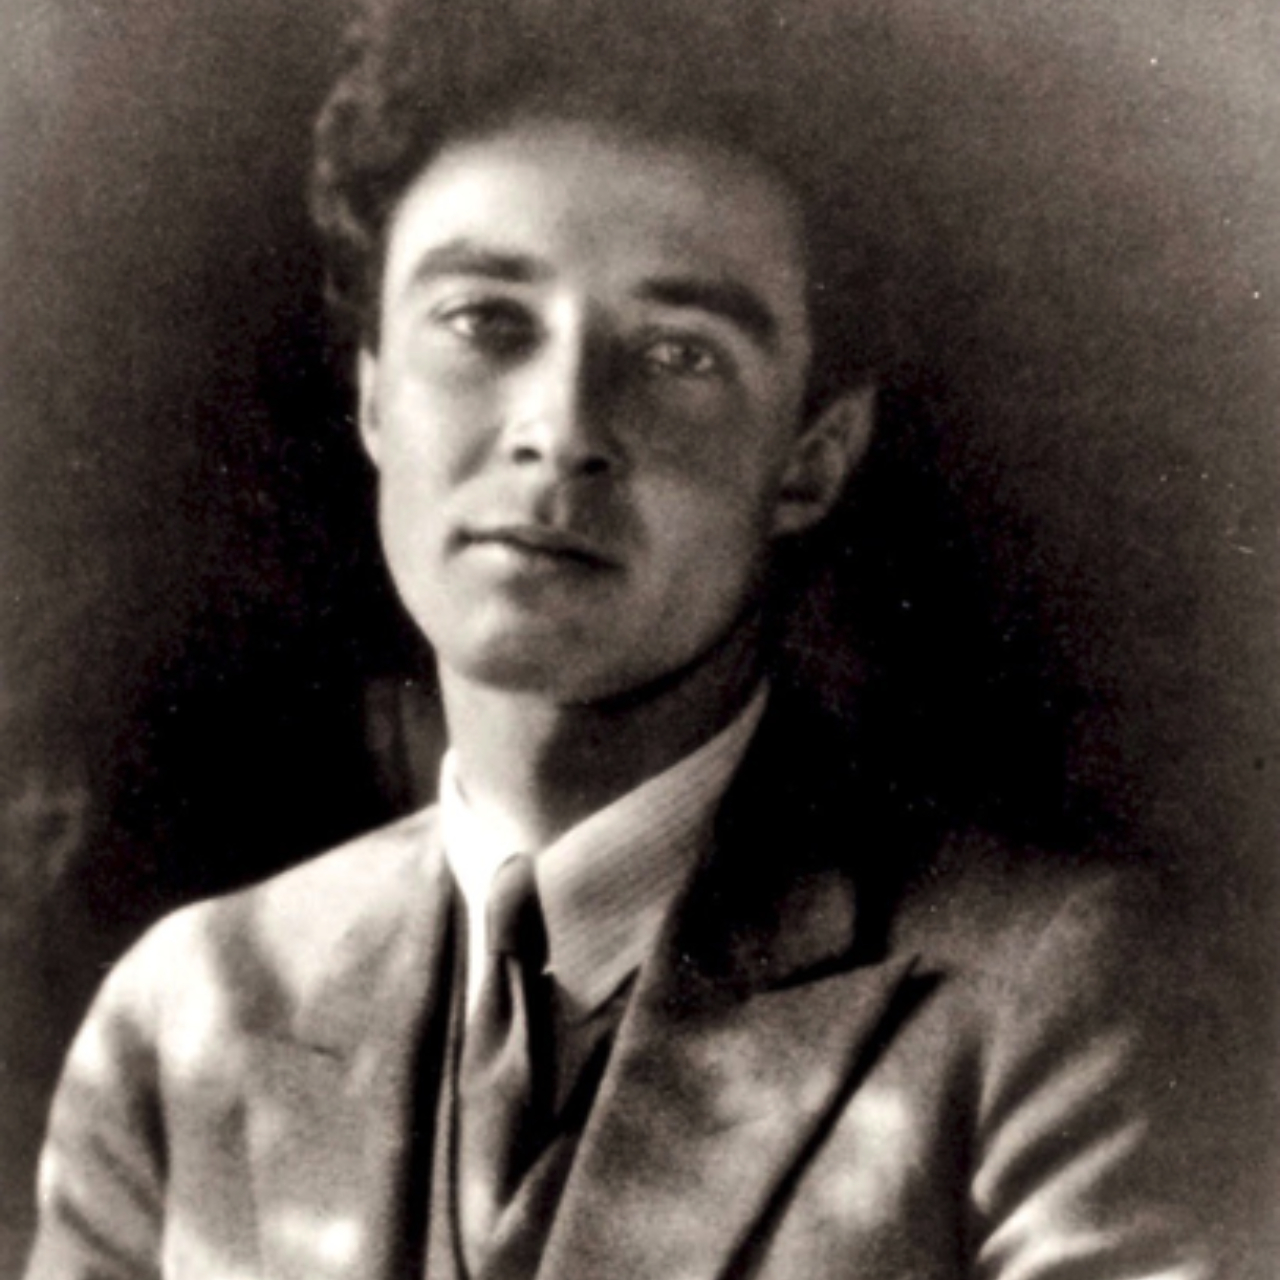 Fotografia de Oppenheimer quando mais jovem, entre 1926 e 1927